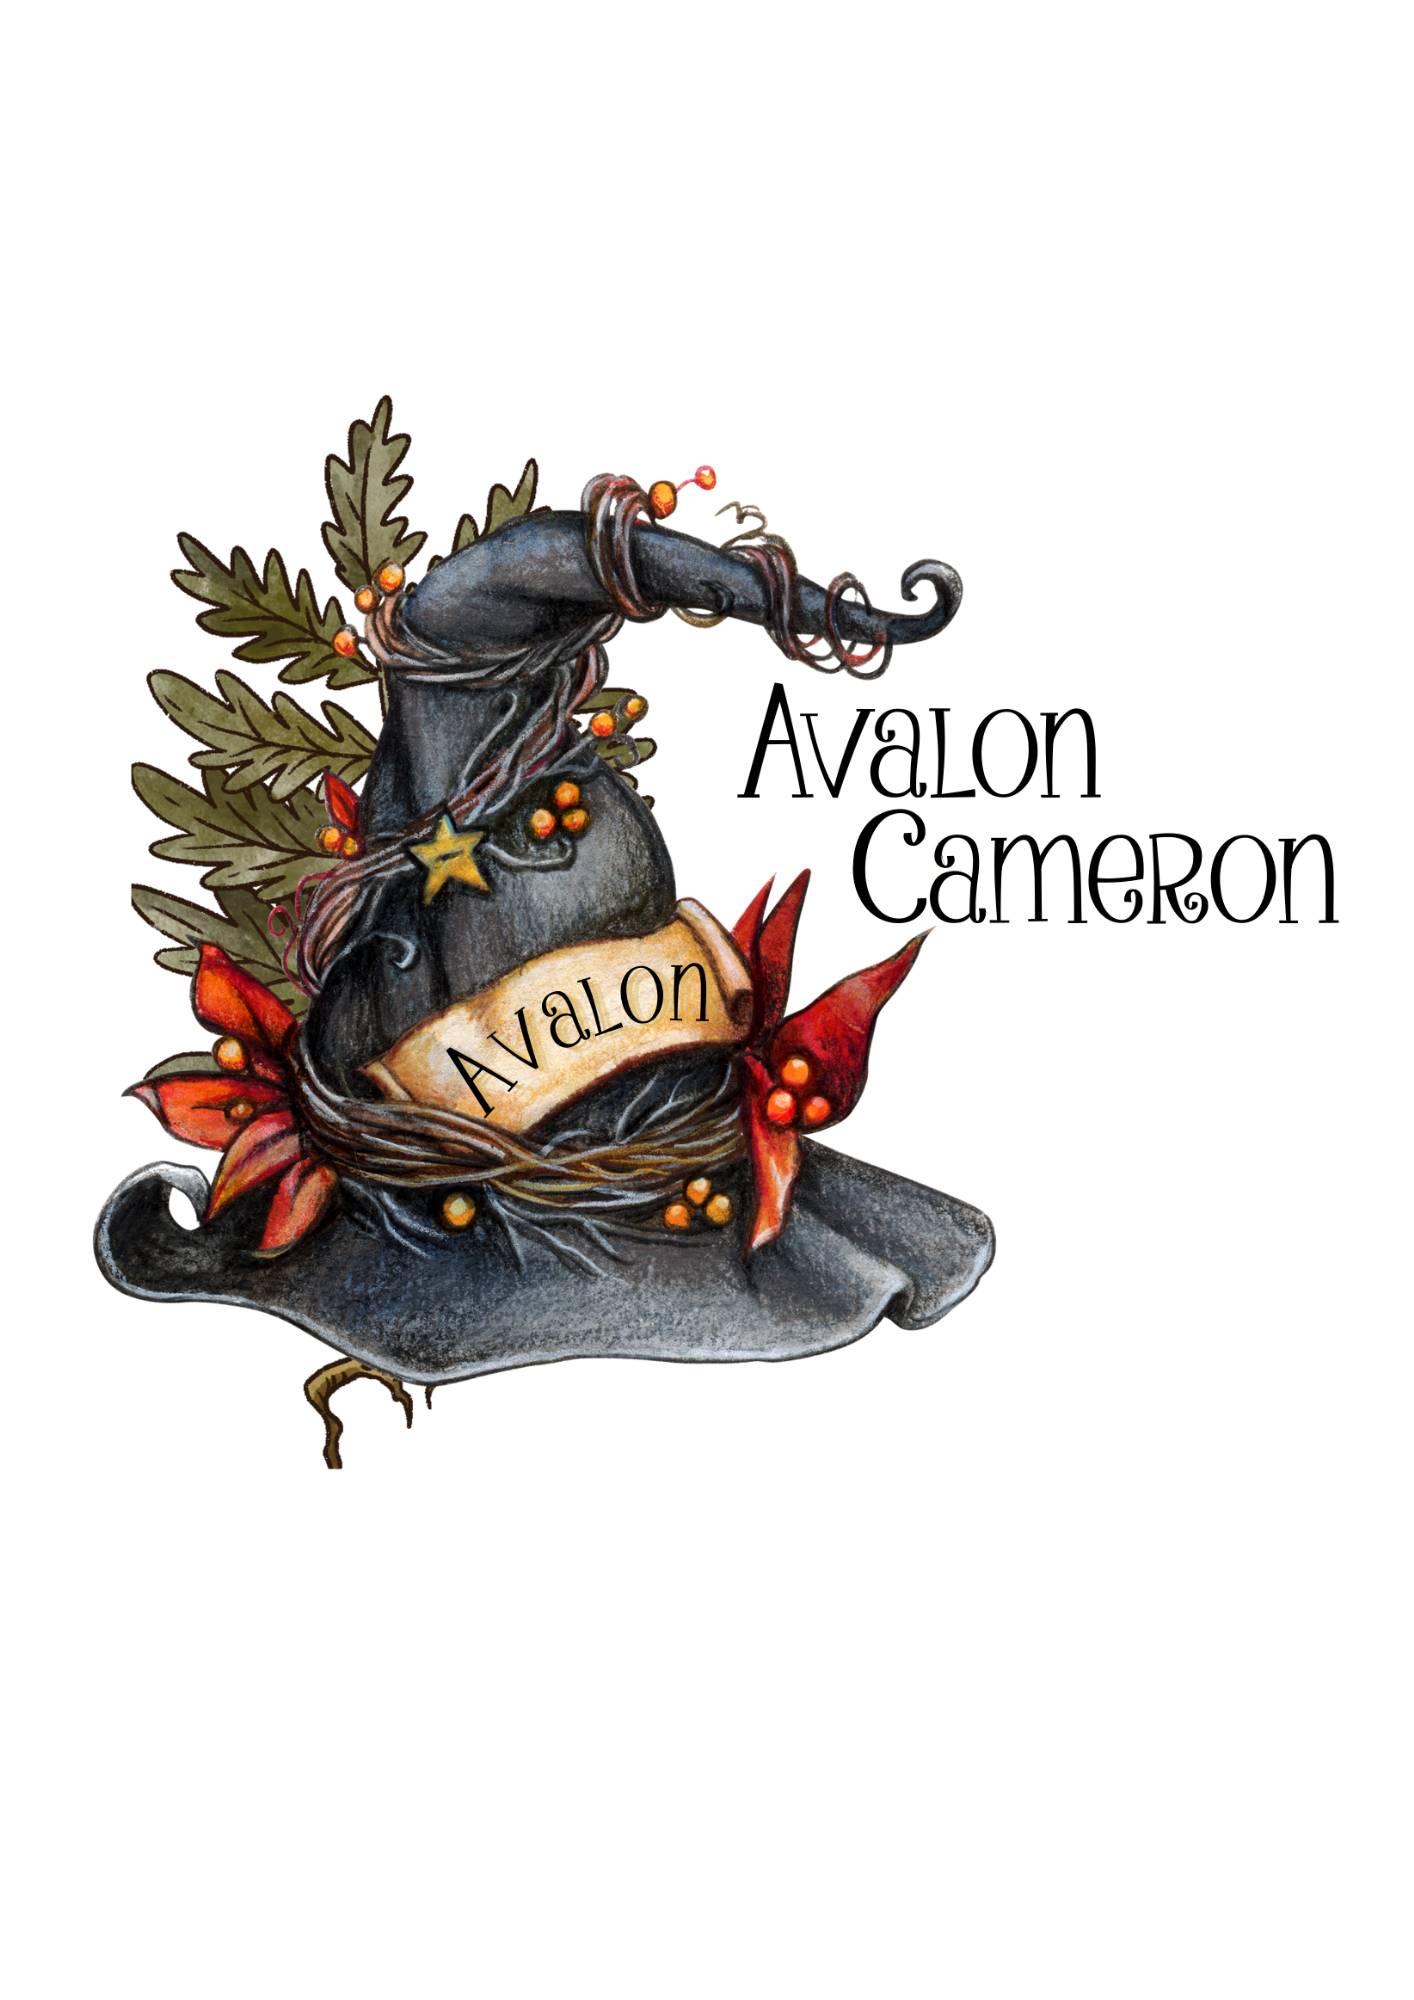 Avalon Cameron the Folk Witch, Tarot Teacher, Book Lover